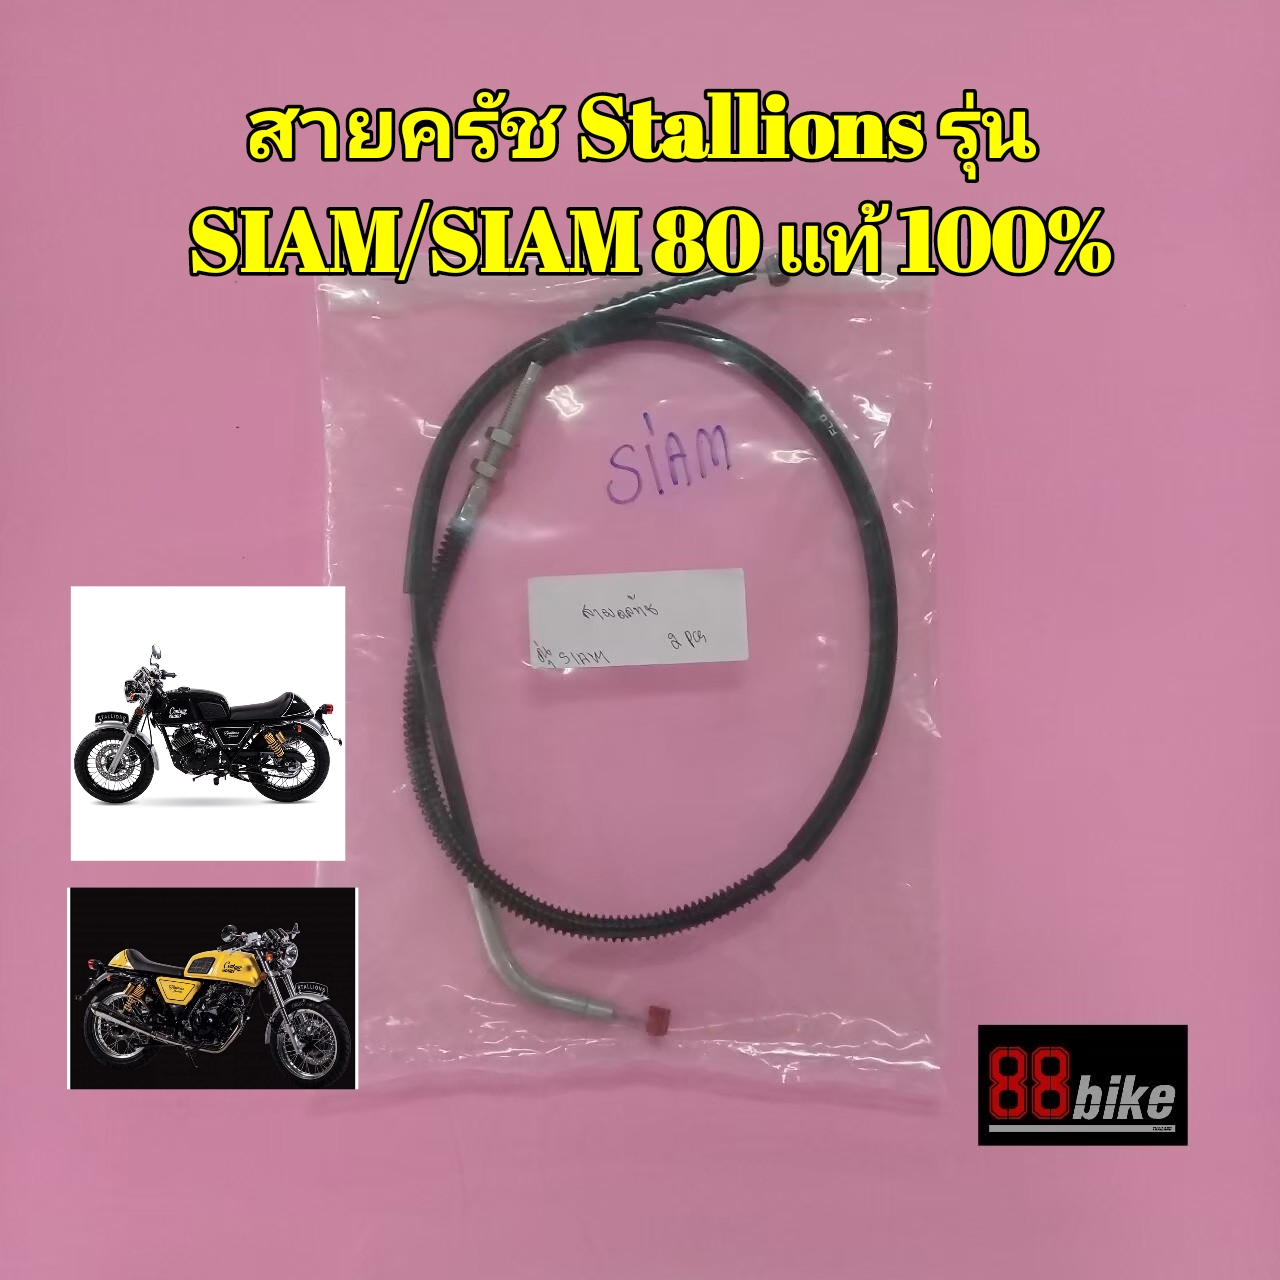 สายครัช Stallions Siam / Siam 80 แท้ศูนย์ มีรับประกัน มีเก็บเงินปลายทาง สายคลัช สายคลัทช์ สายคลัท สายคลัชมอไซ สตาเลียน สตาเลี่ยน